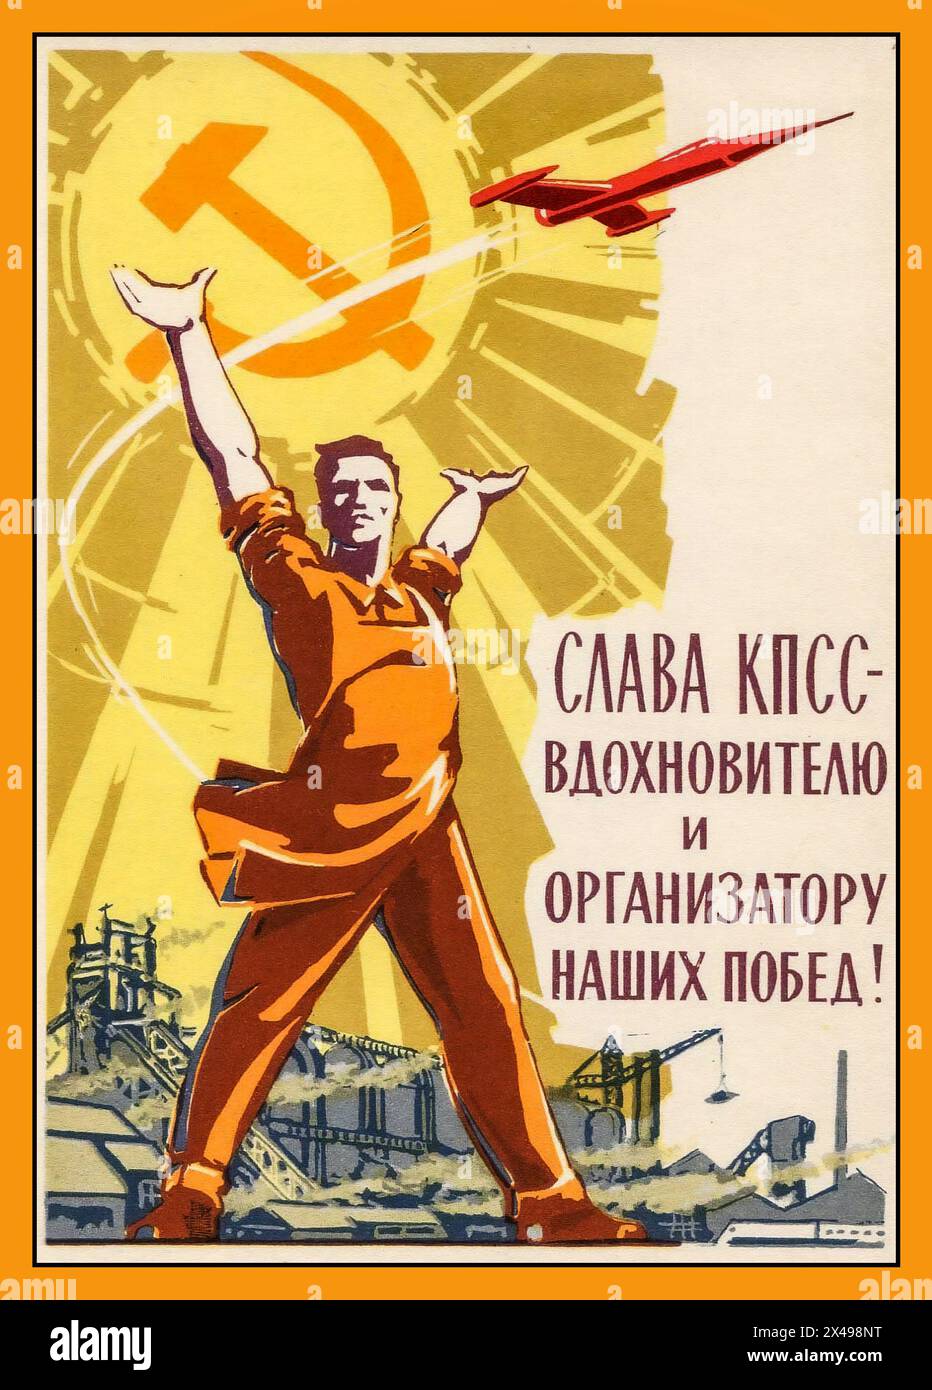 Affiche de propagande russe soviétique de 1960 GLOIRE AU PCUS L'ORGANISATEUR INSPIRÉ DU Triomphe soviétique dans l'espace de NOS VICTOIRES. Le Parti communiste de l'Union soviétique (PCUS), connu à certains moments sous le nom de Parti communiste russe. URSS Russie Union soviétique Banque D'Images